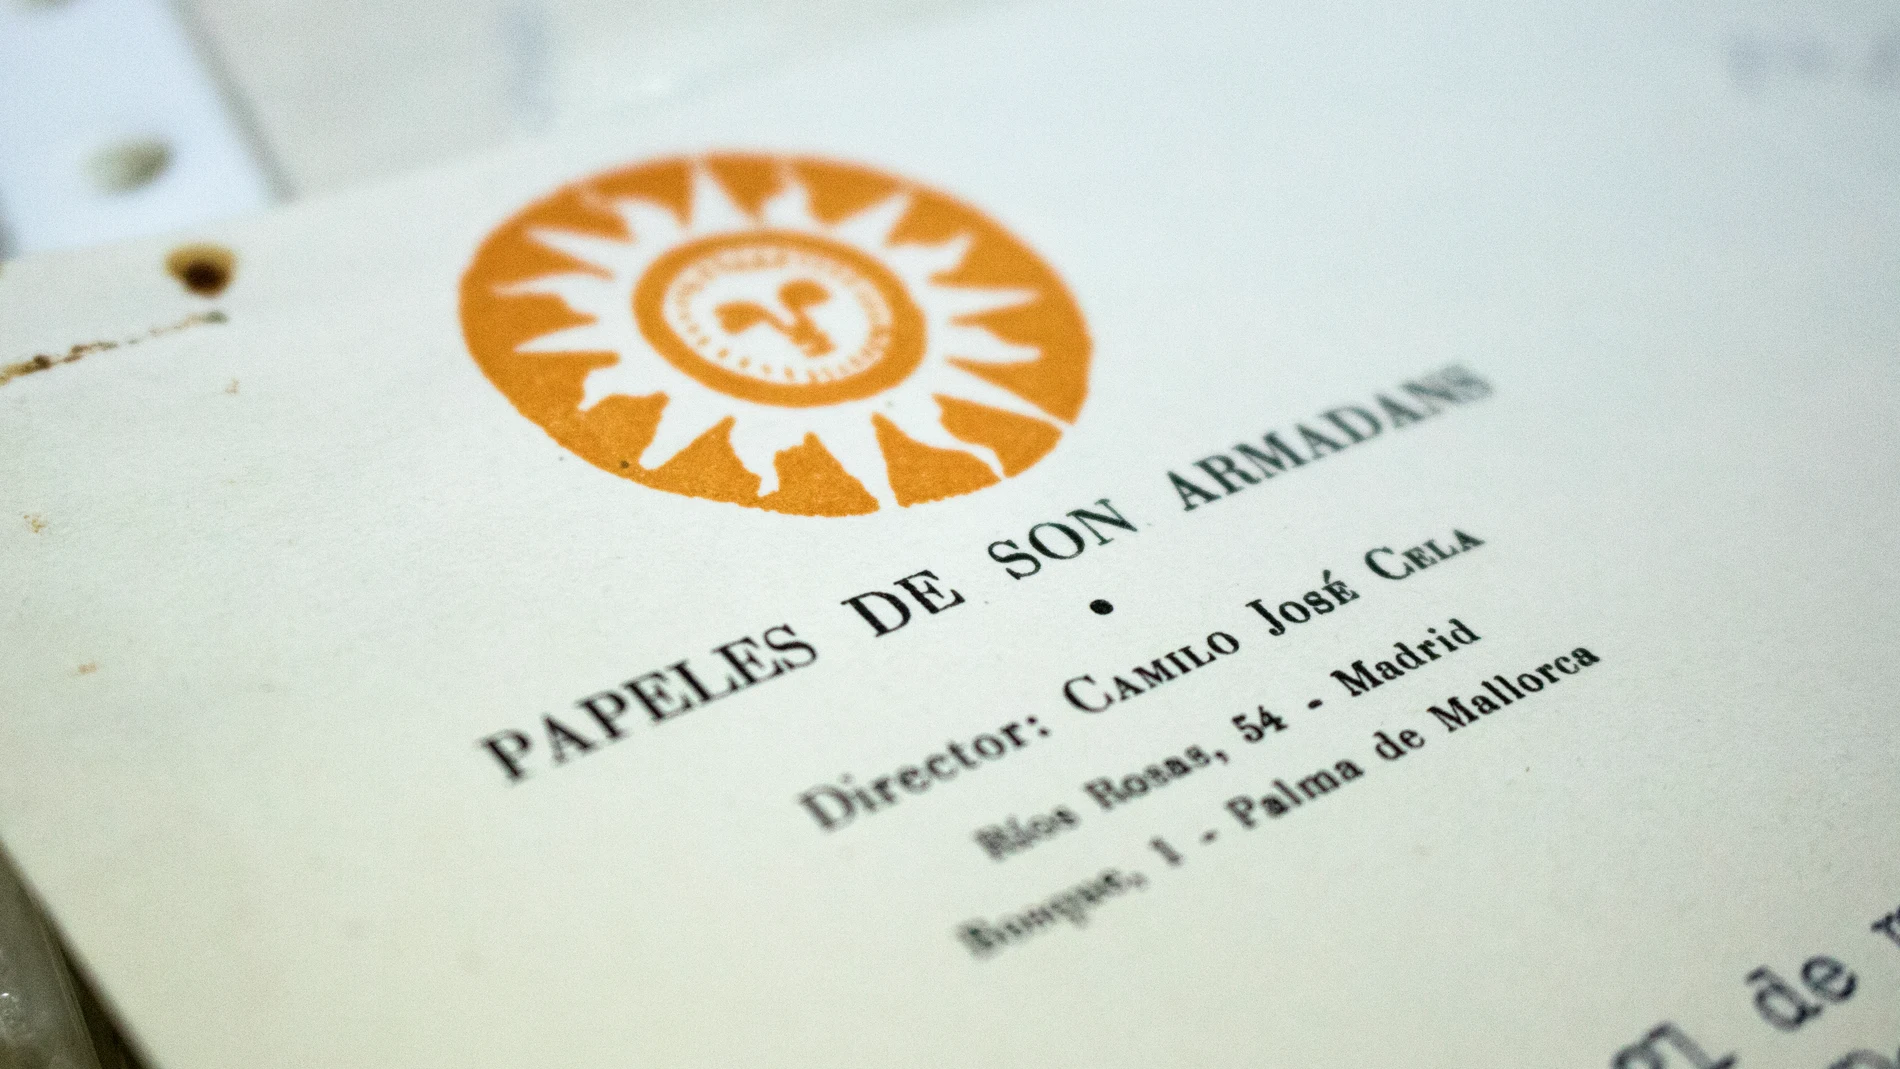 Sello y logo de la revista 'Papeles de Son Armadans', esencial en la carrera literaria de Camilo José Cela